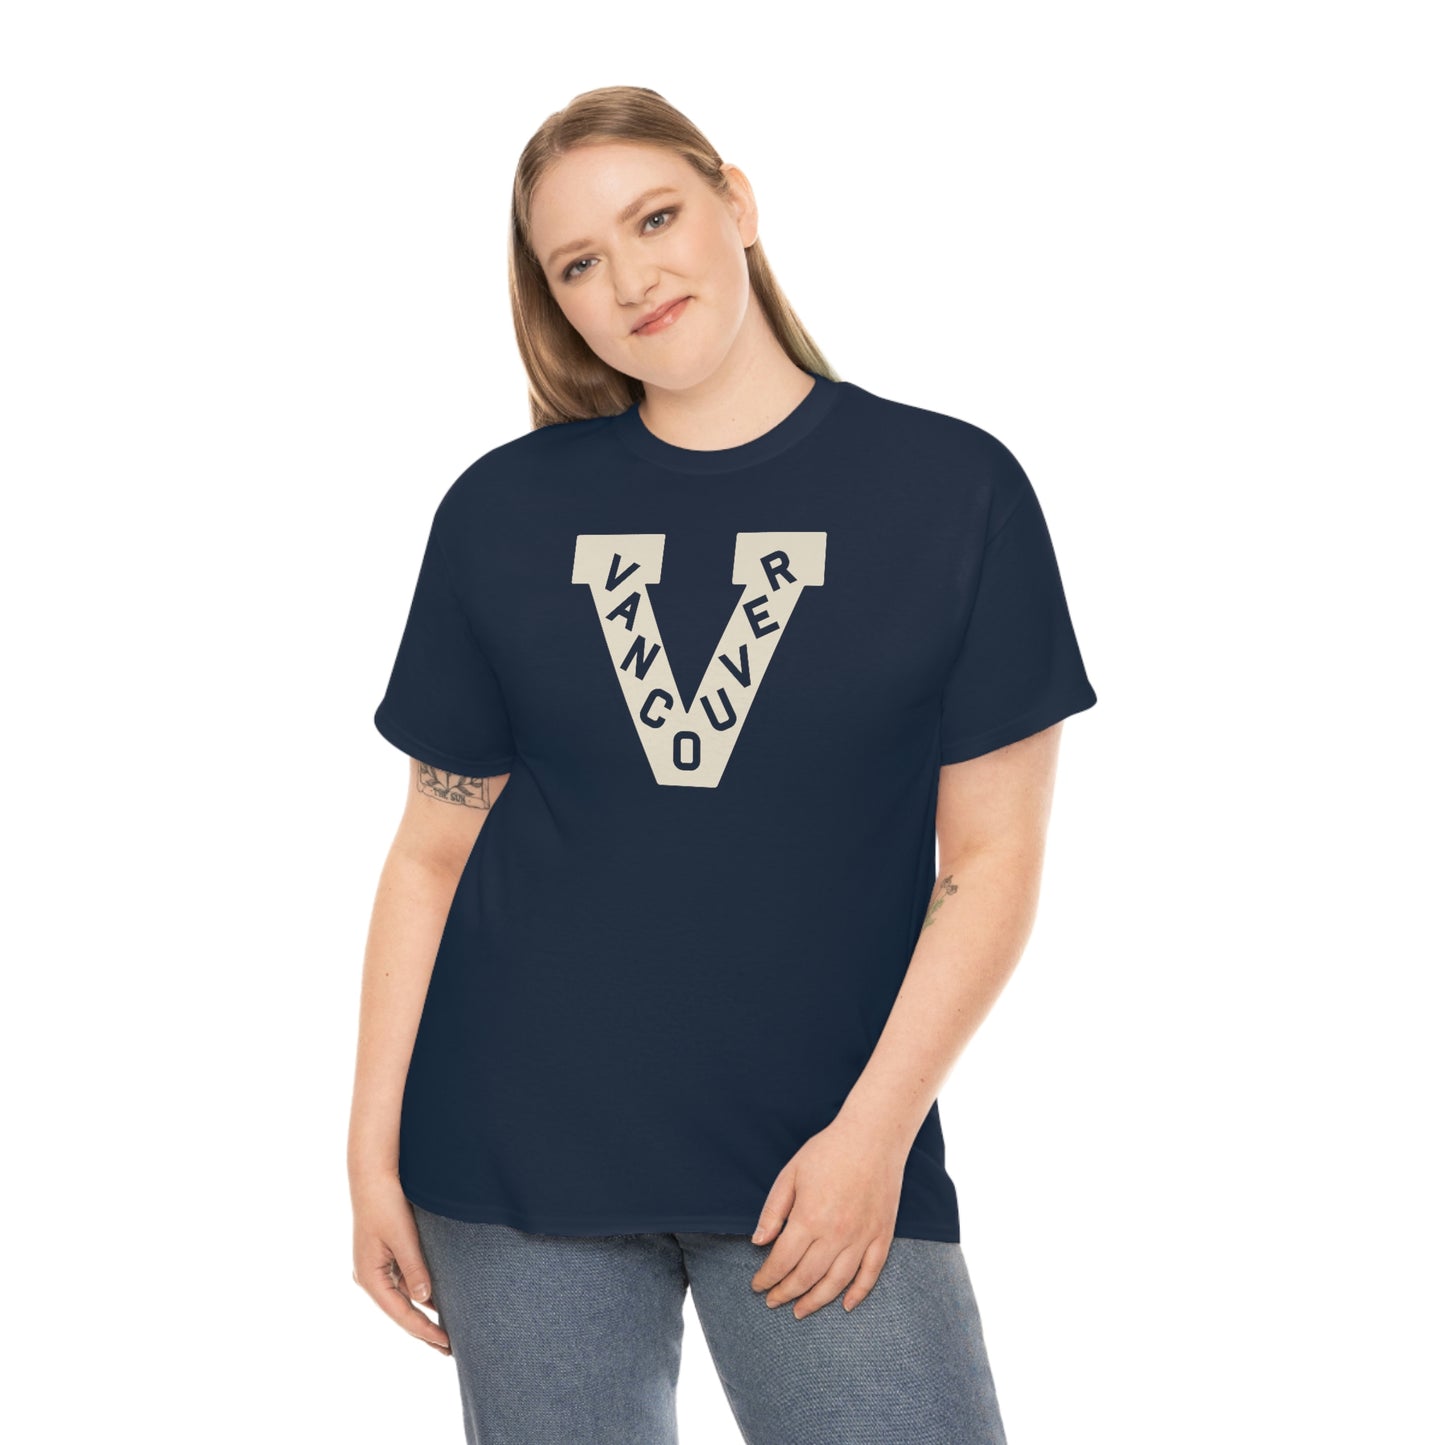 Vancouver Millionaires T-Shirt